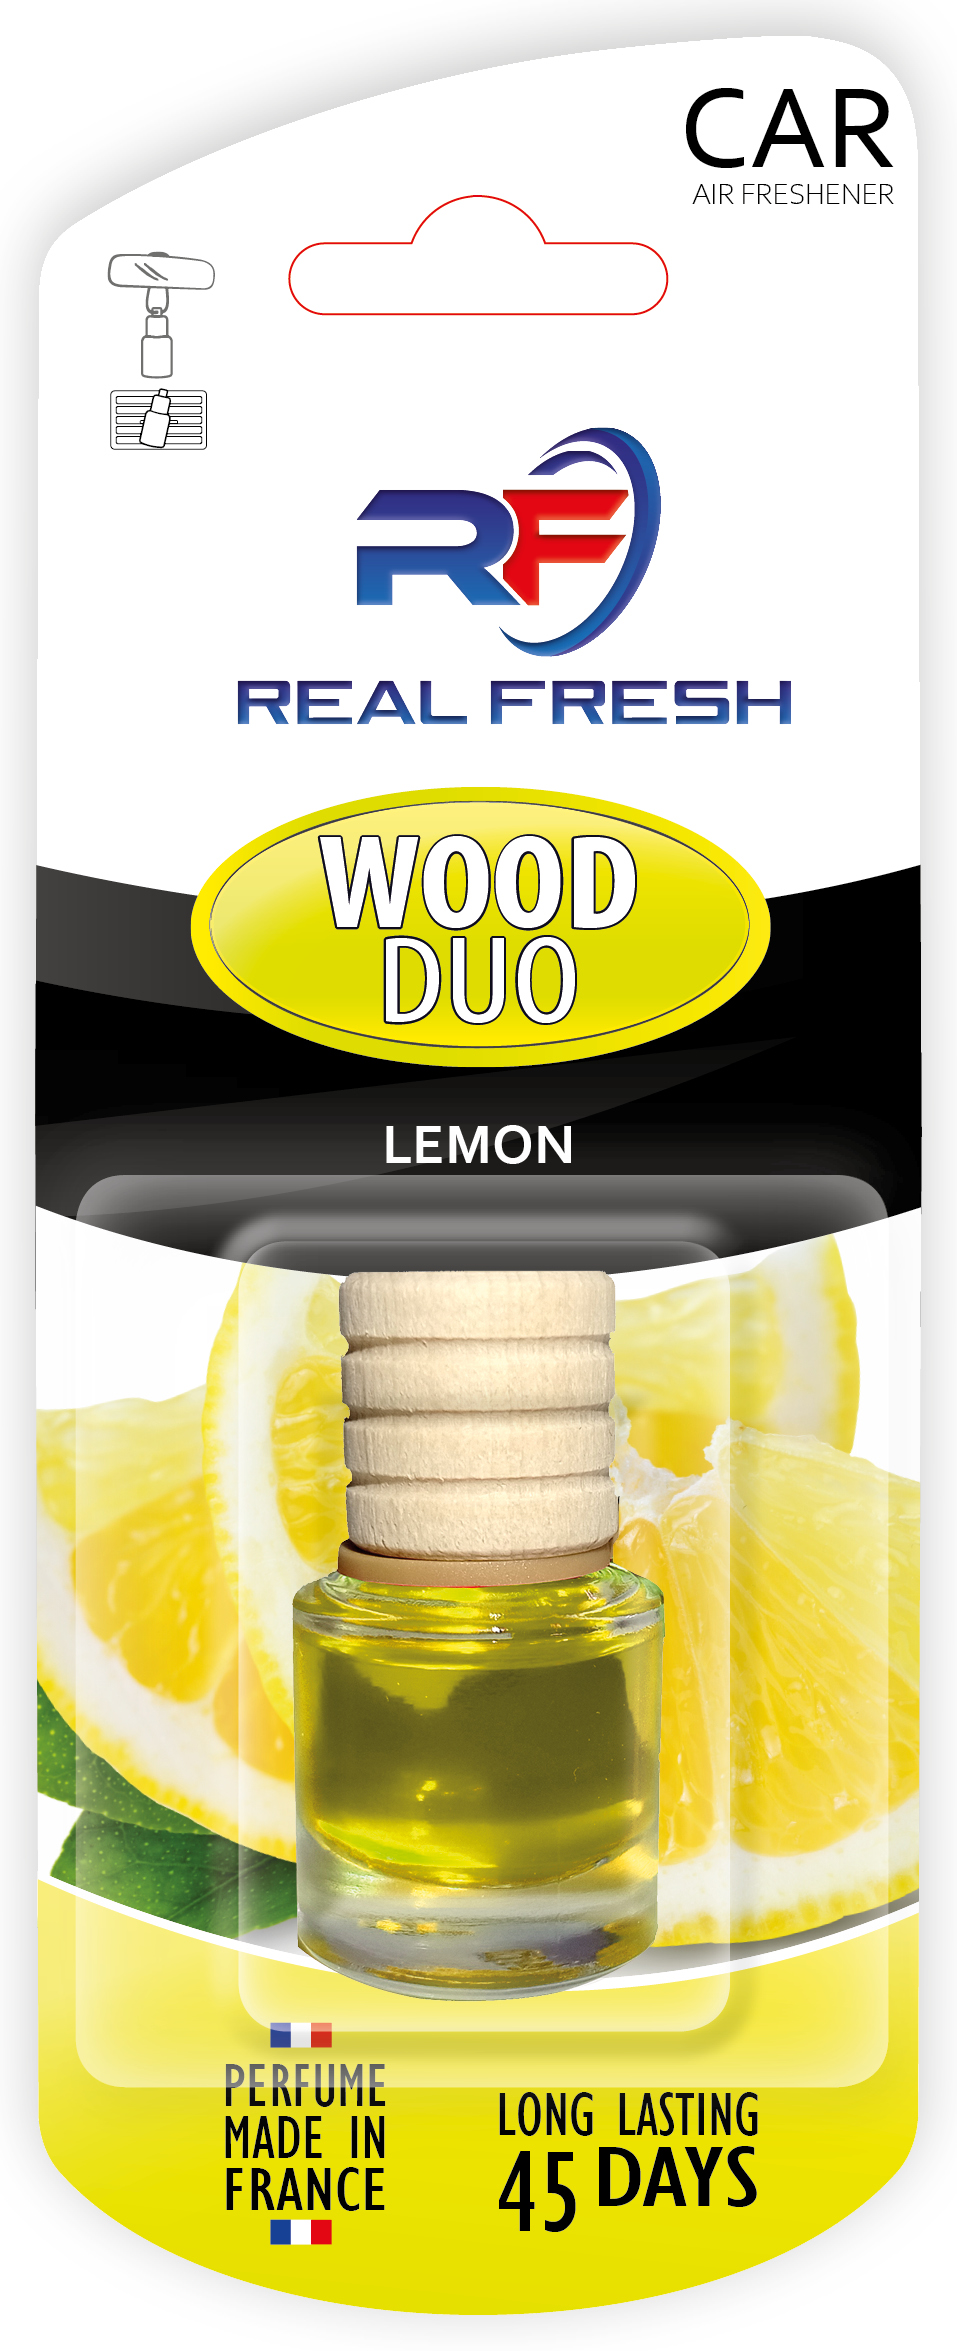 WOOD DUO Lemon Image